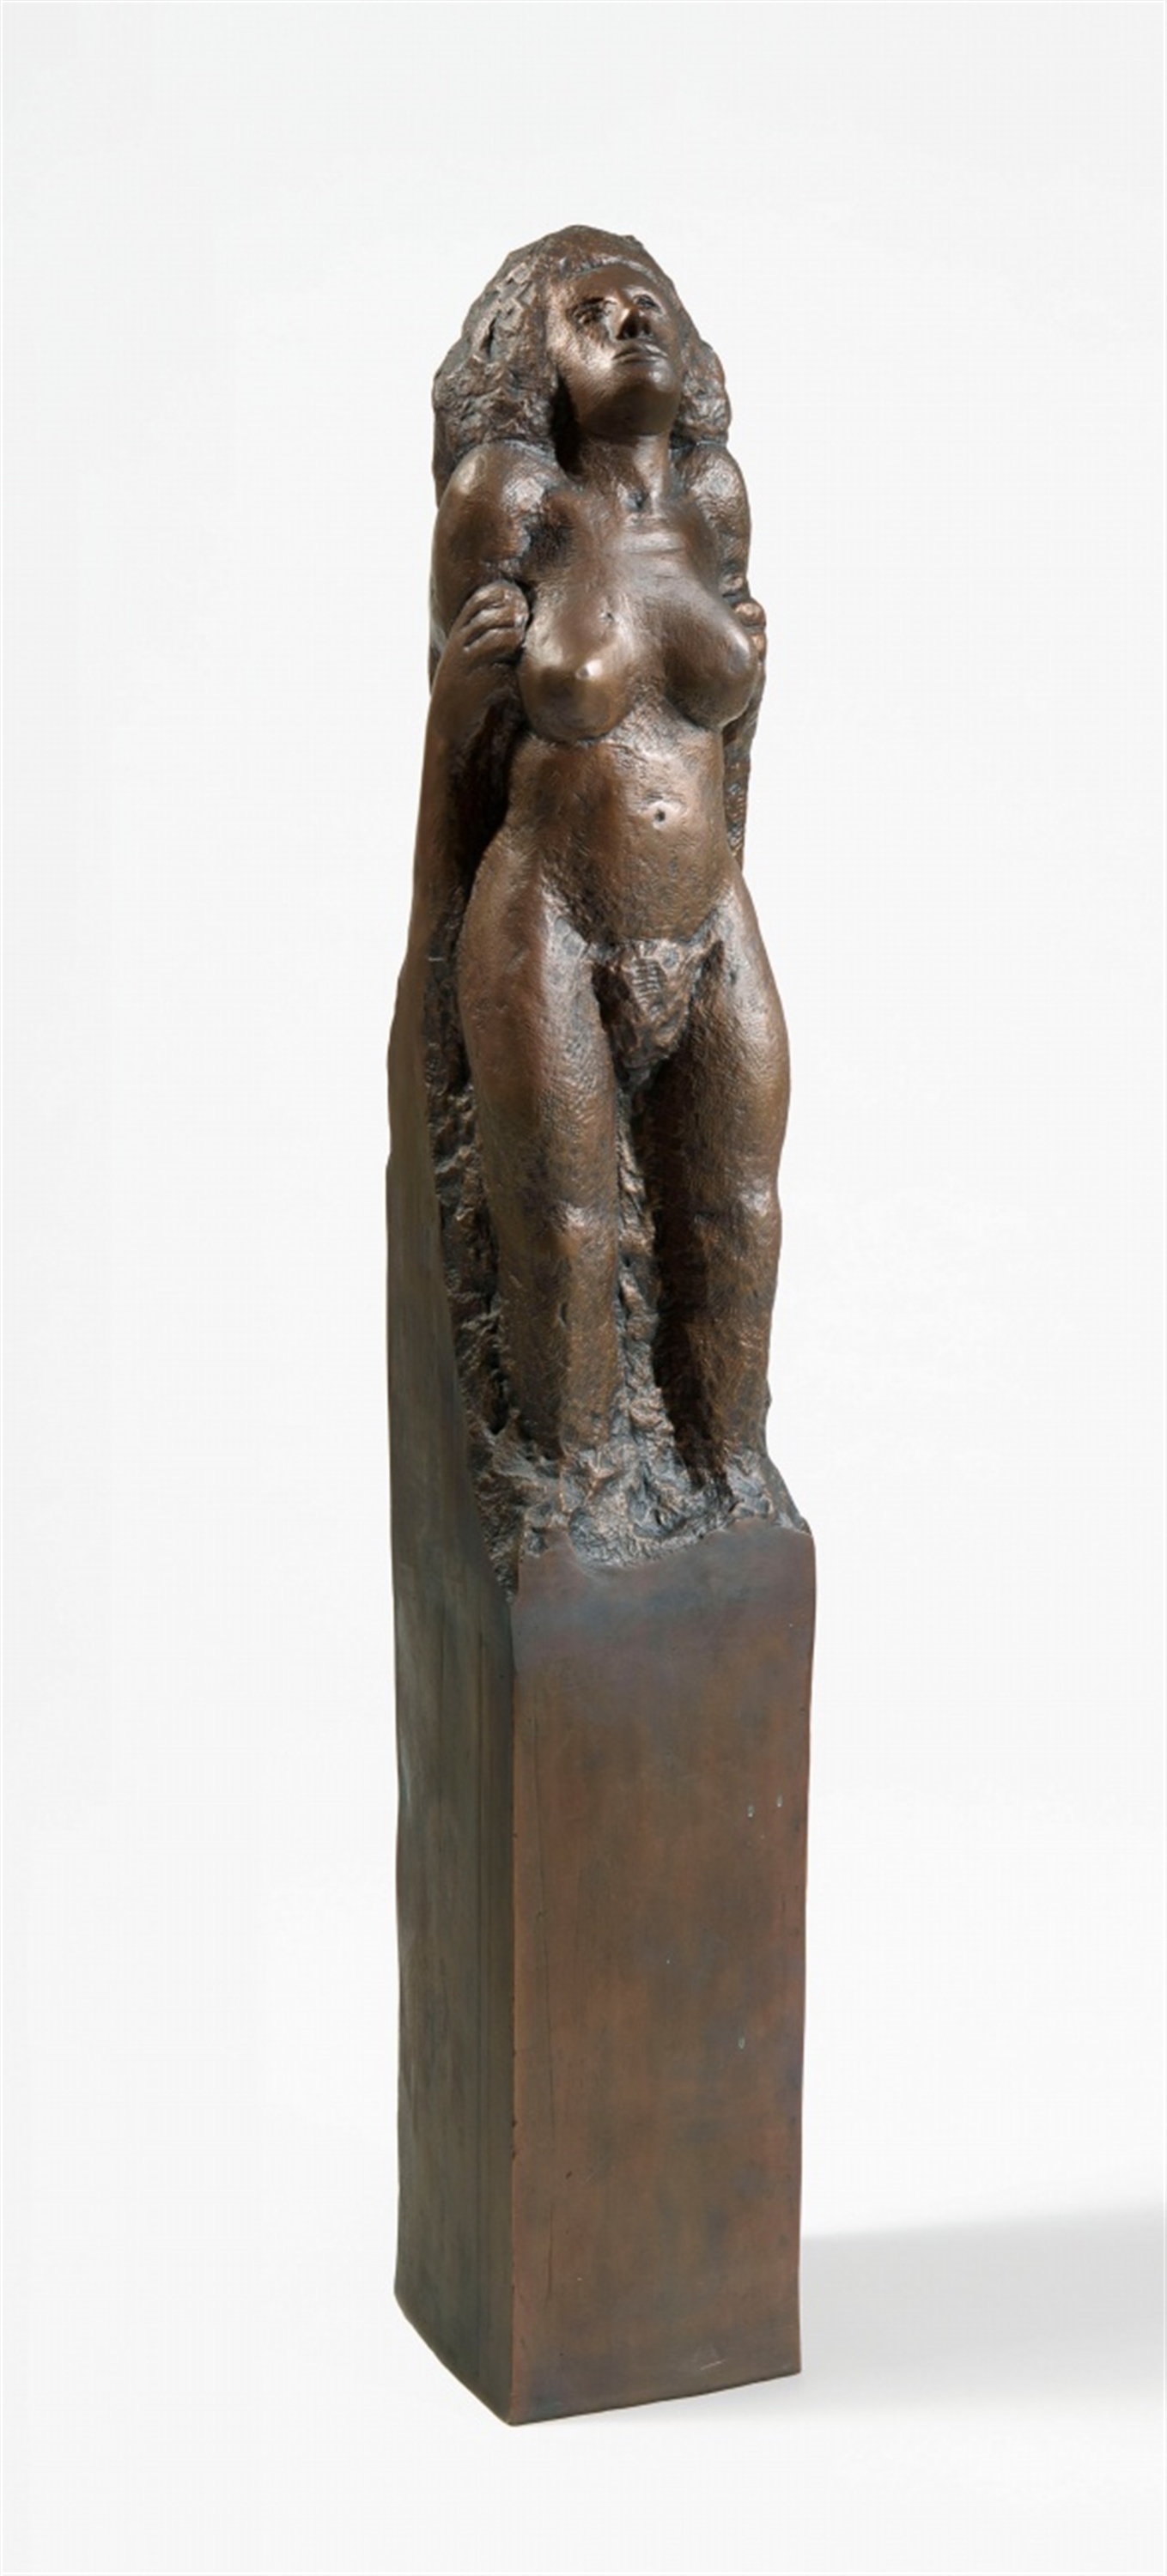 Stele mit weiblicher Figur by Alfred Hrdlicka, 1975/2000